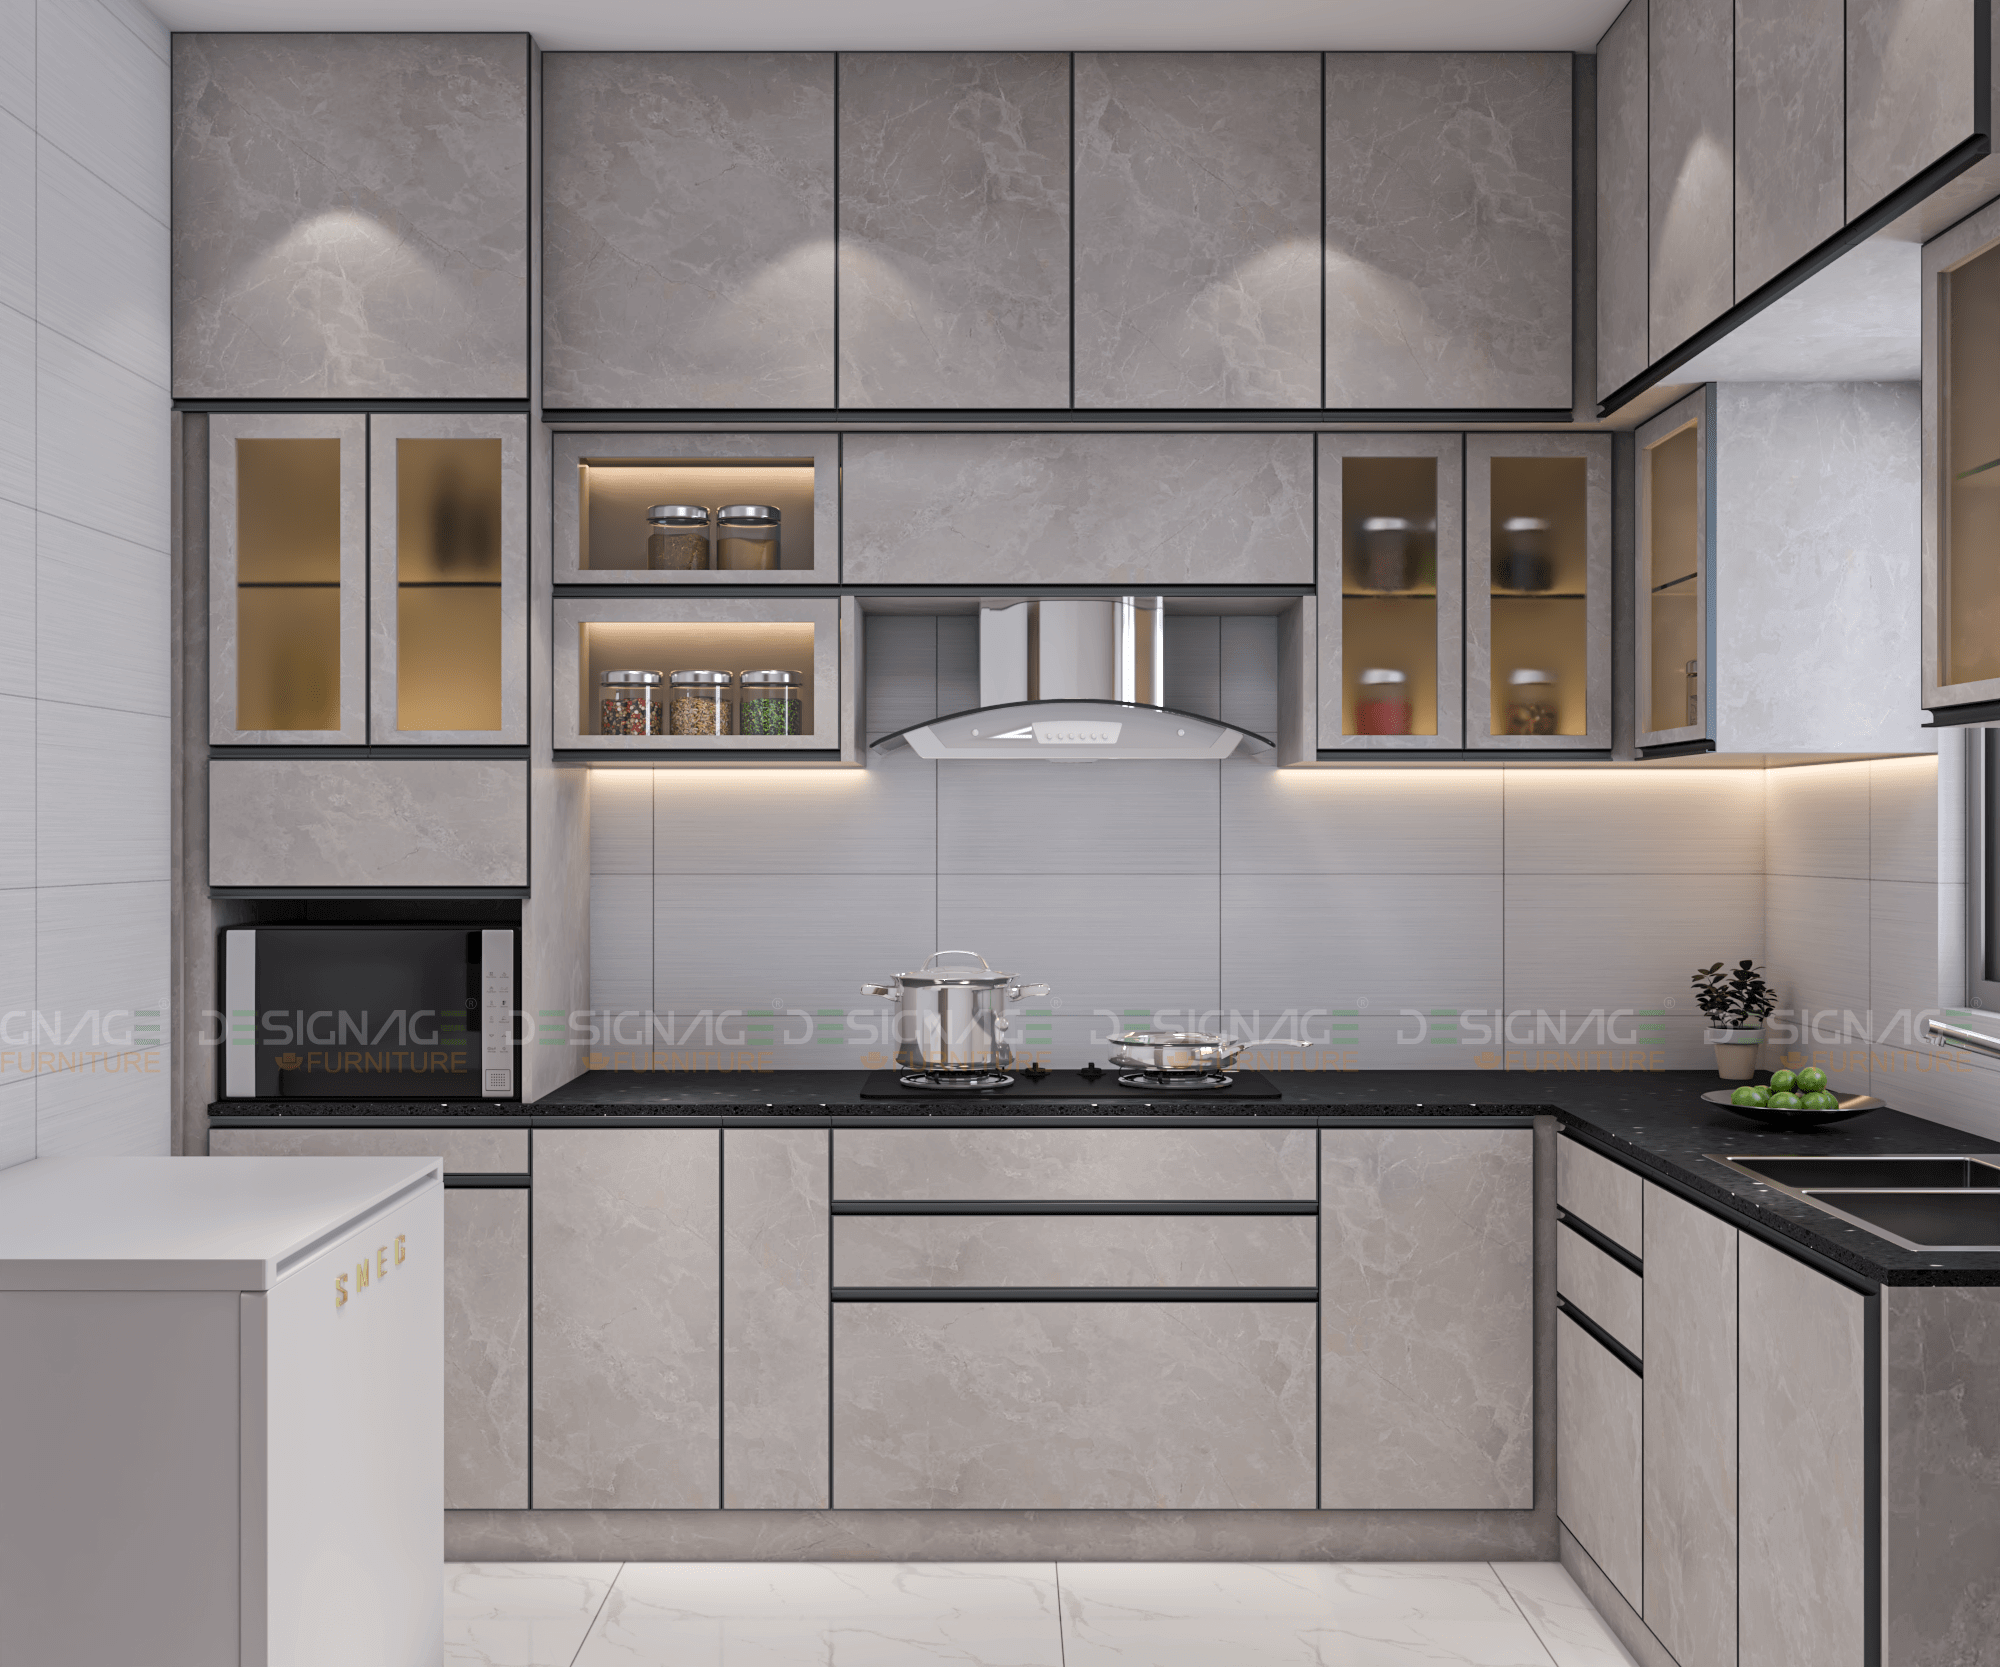 Home Interior Kitchen Cabinet Design In